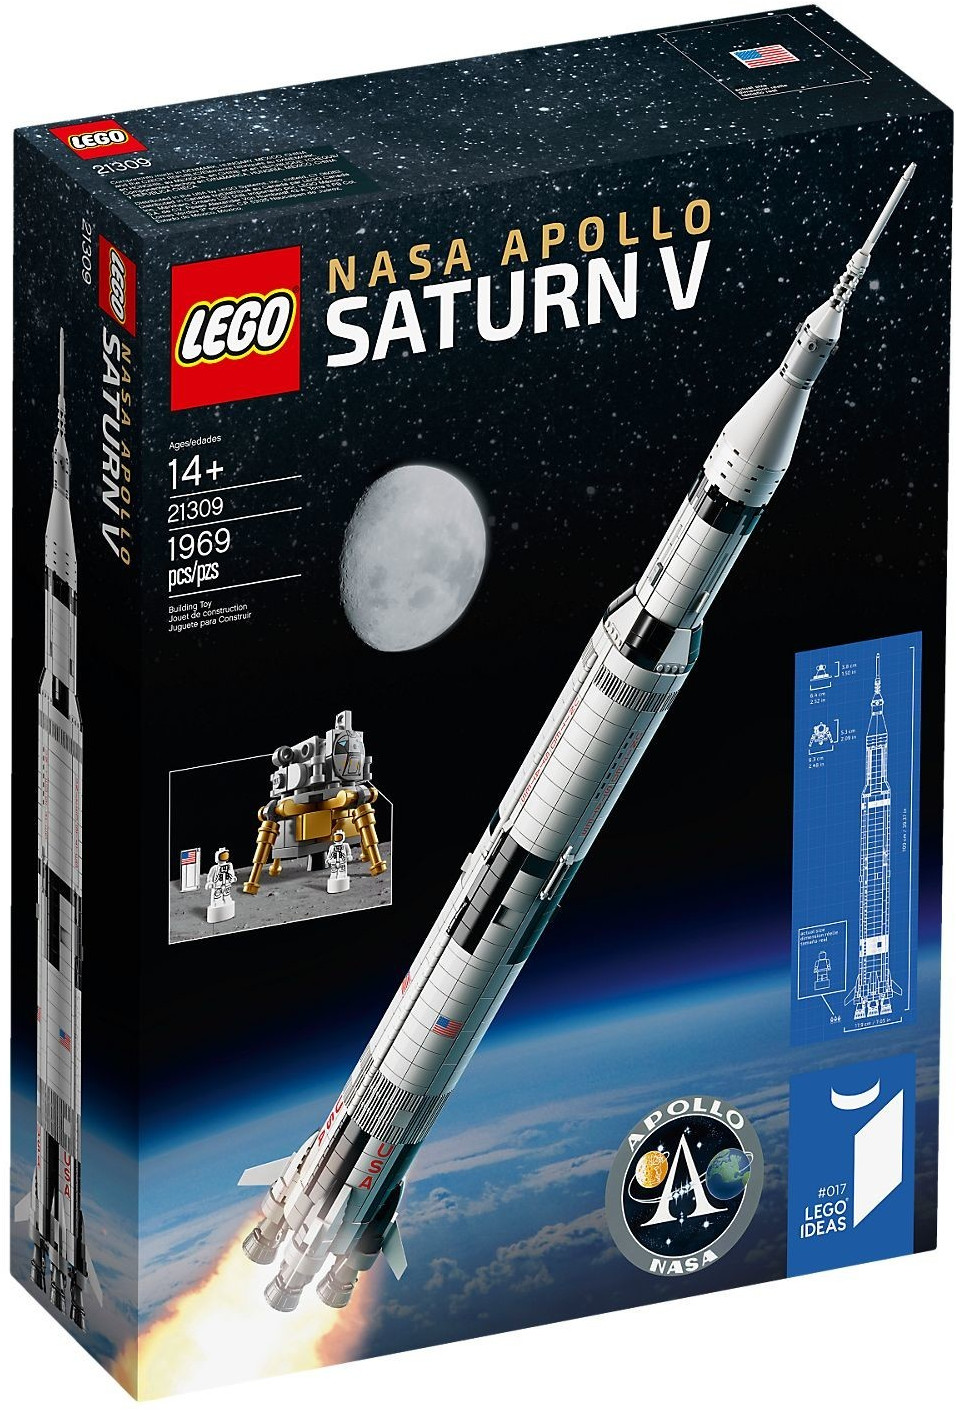 Billede af LEGO 21309 Nasa Apollo Saturn V